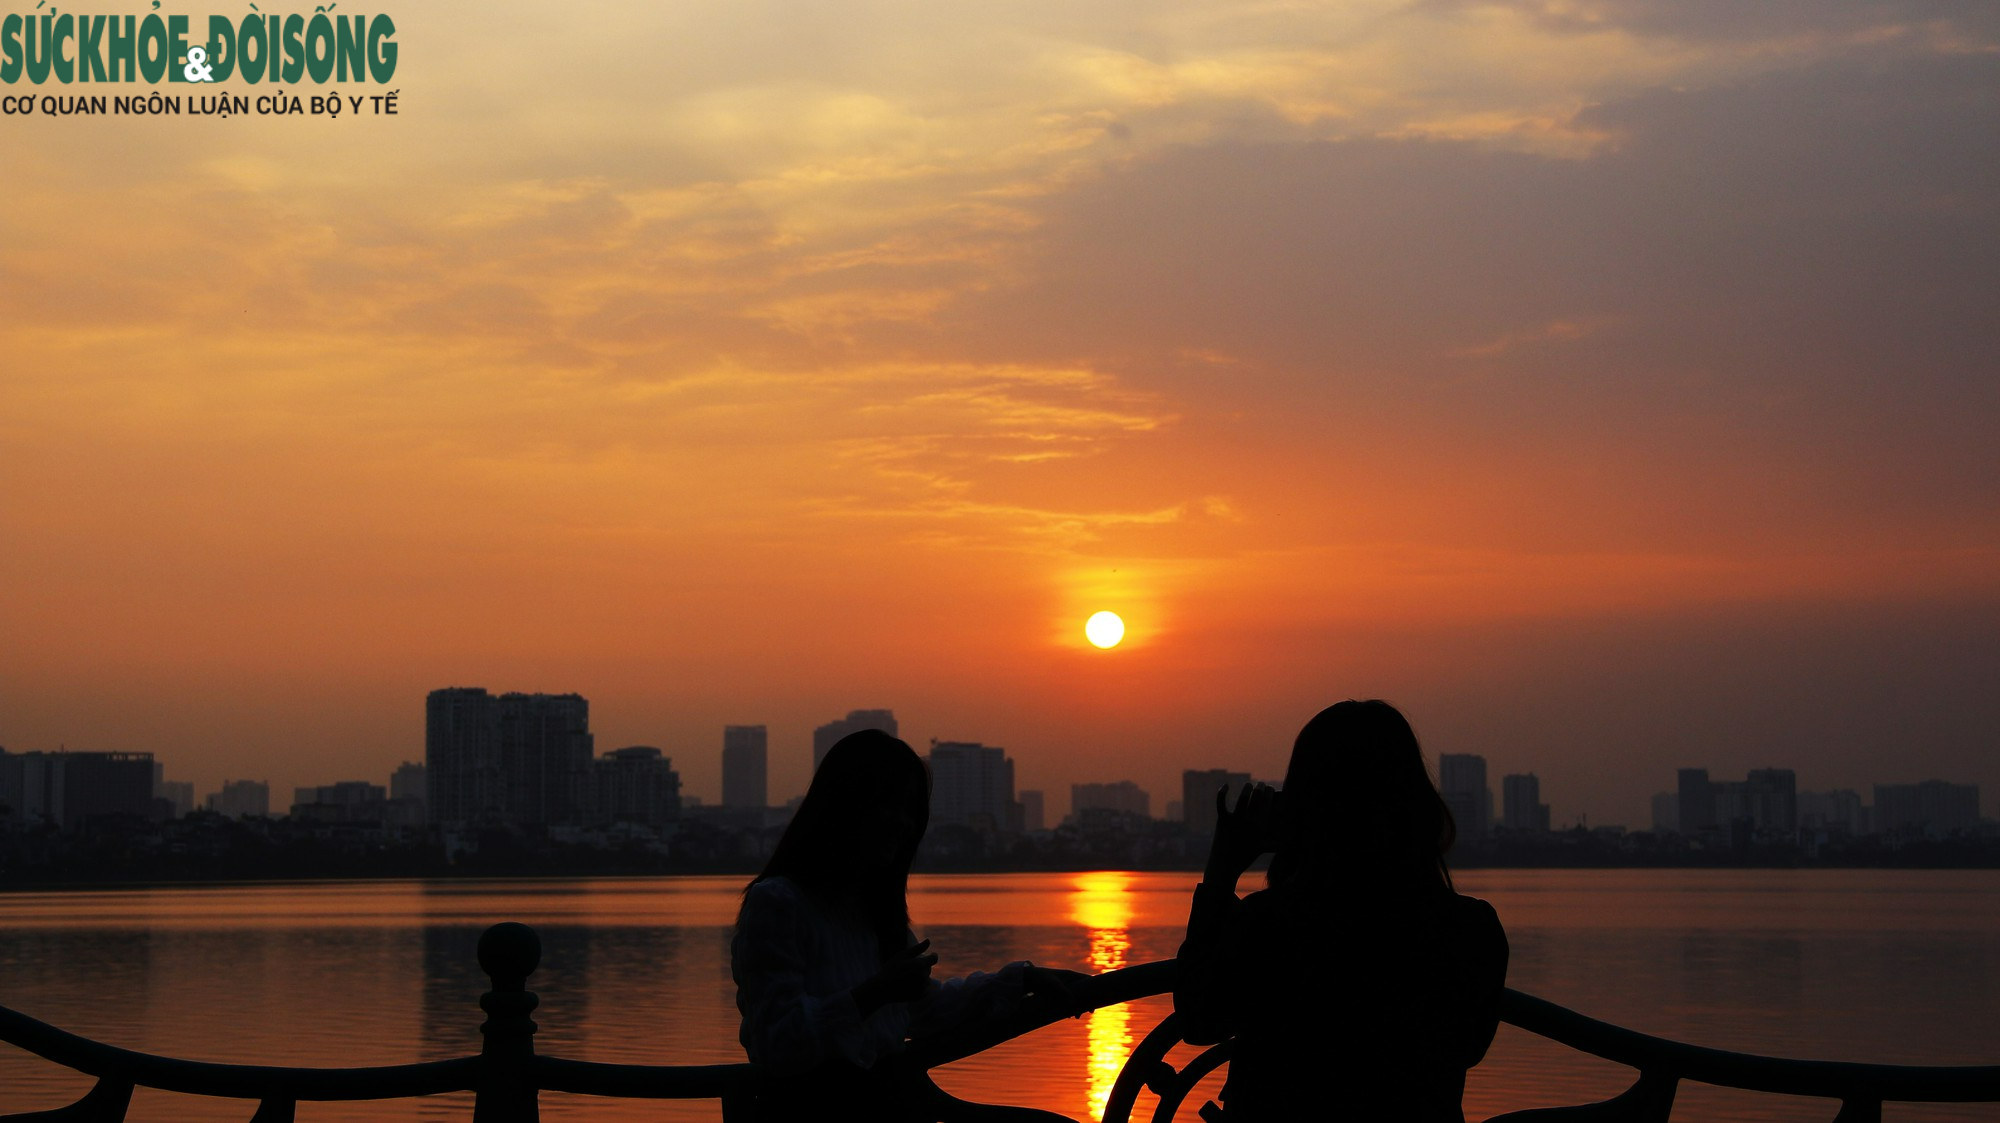 Hồ Tây hoàng hôn là một trong những địa điểm tuyệt vời để ngắm hoàng hôn tại Hà Nội. Bức ảnh sẽ mang đến cho bạn cảm giác tuyệt vời và kỷ niệm không thể quên về một khung cảnh đẹp, trong lành và đầy màu sắc.